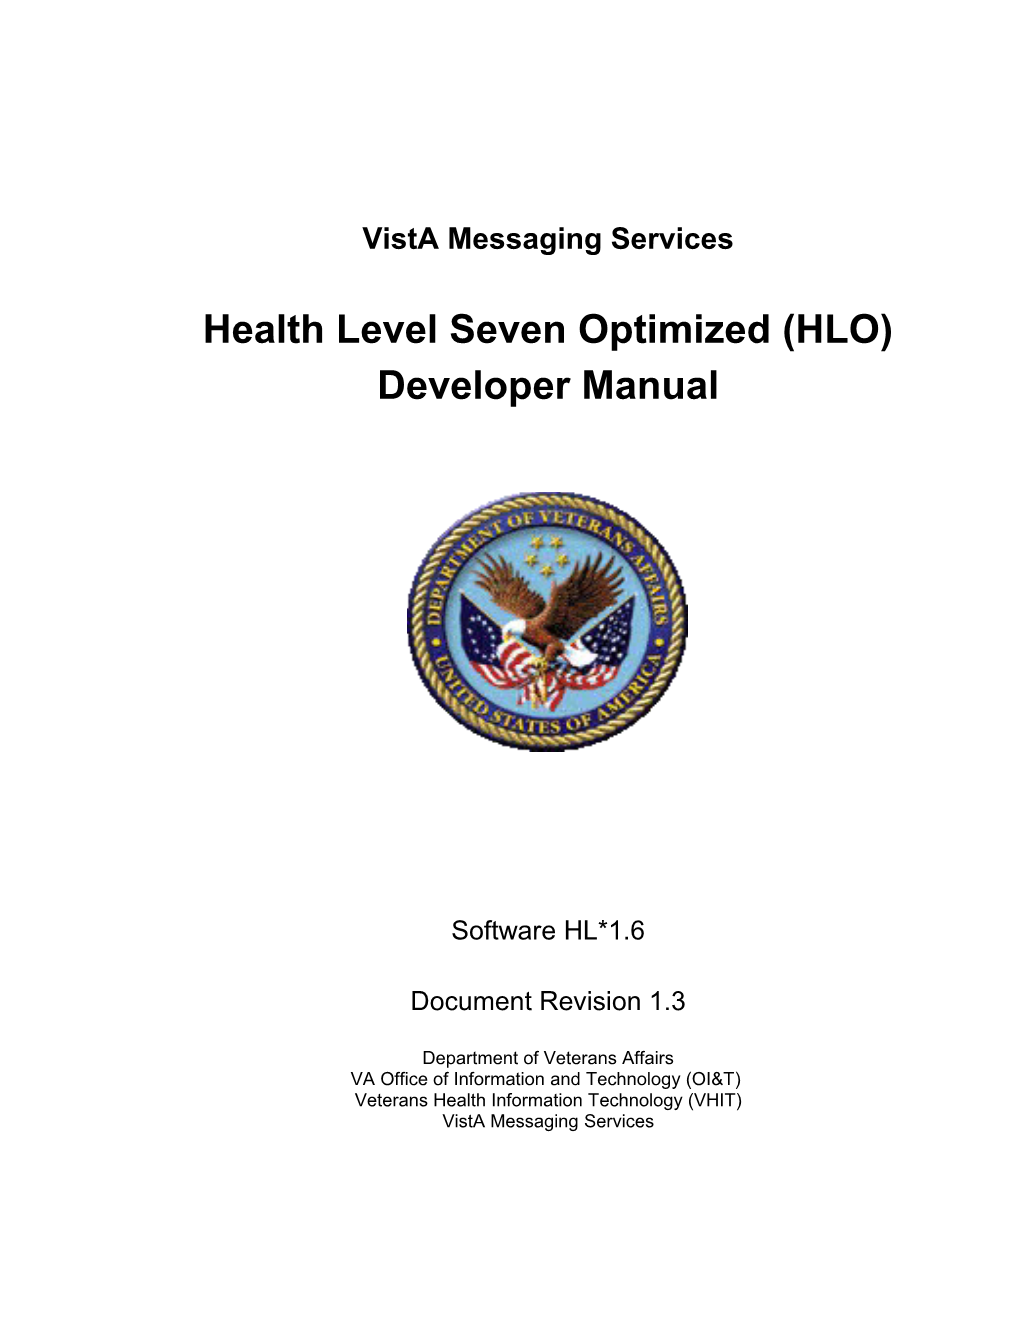 Health Level Seven Optimized Vista S Newest HL7 Engine for HL7 Messaging